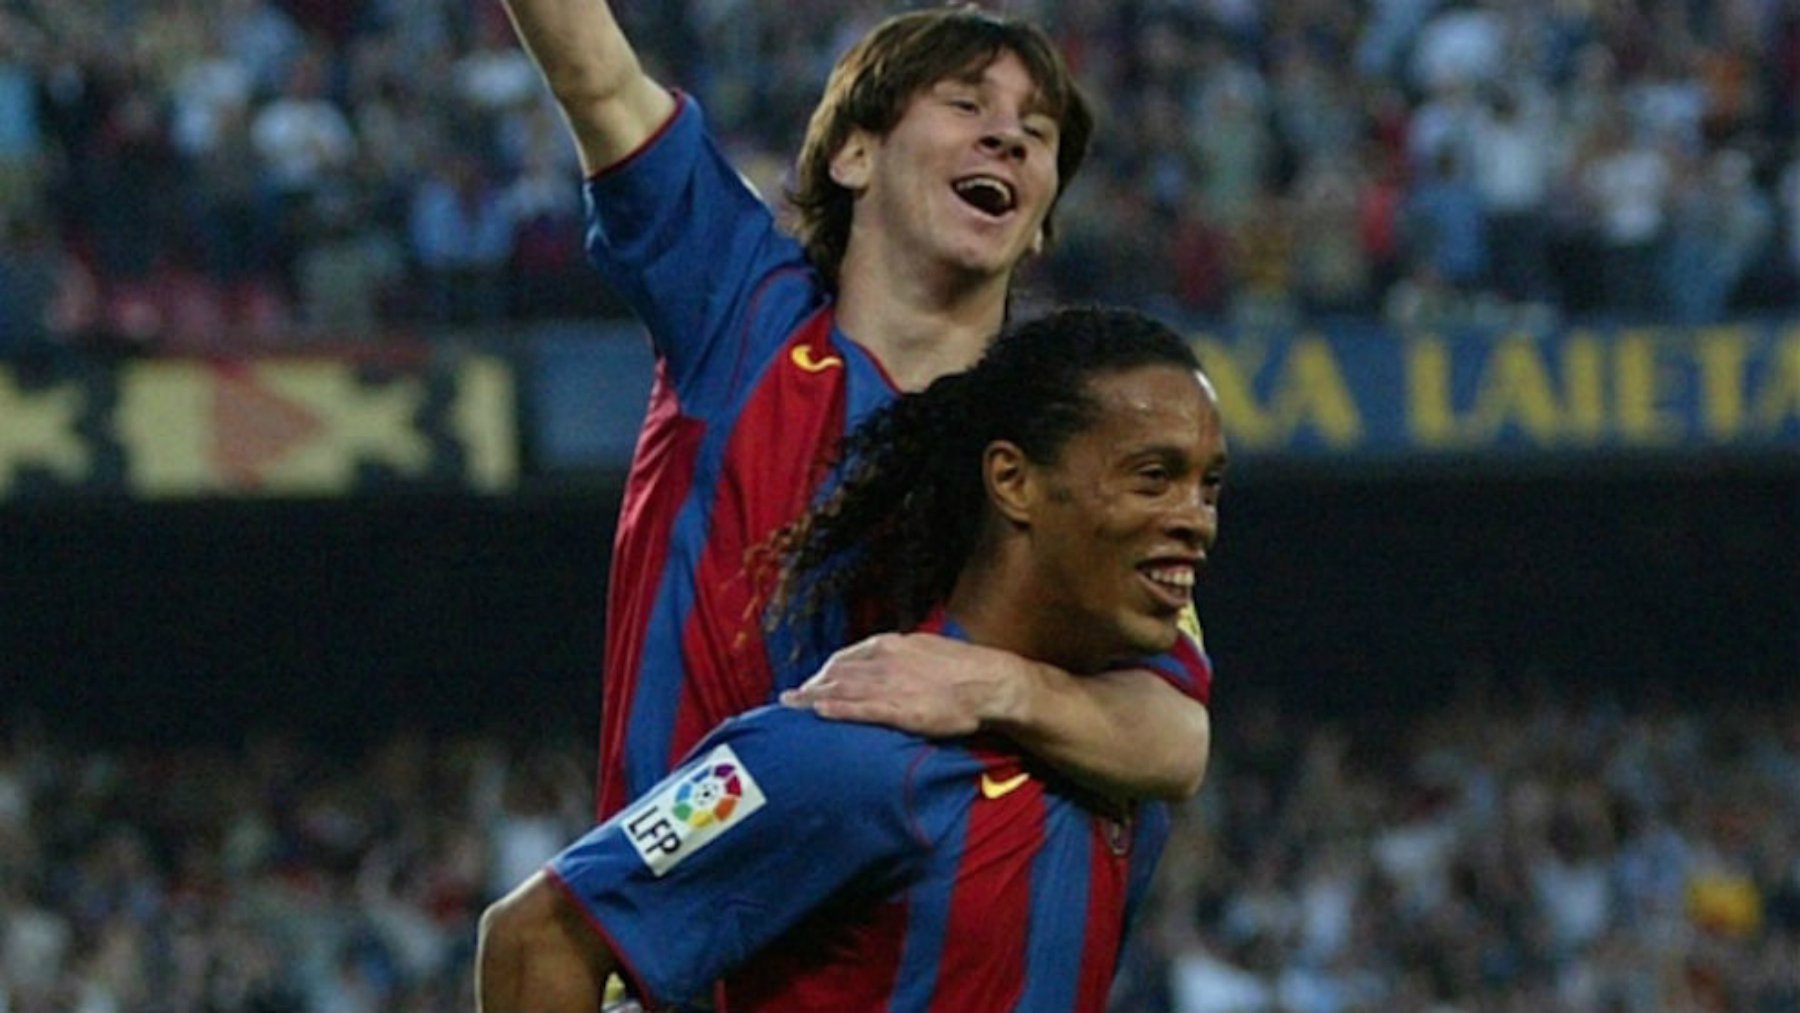 El Barça prepara un homenatge a Ronaldinho entre crítiques